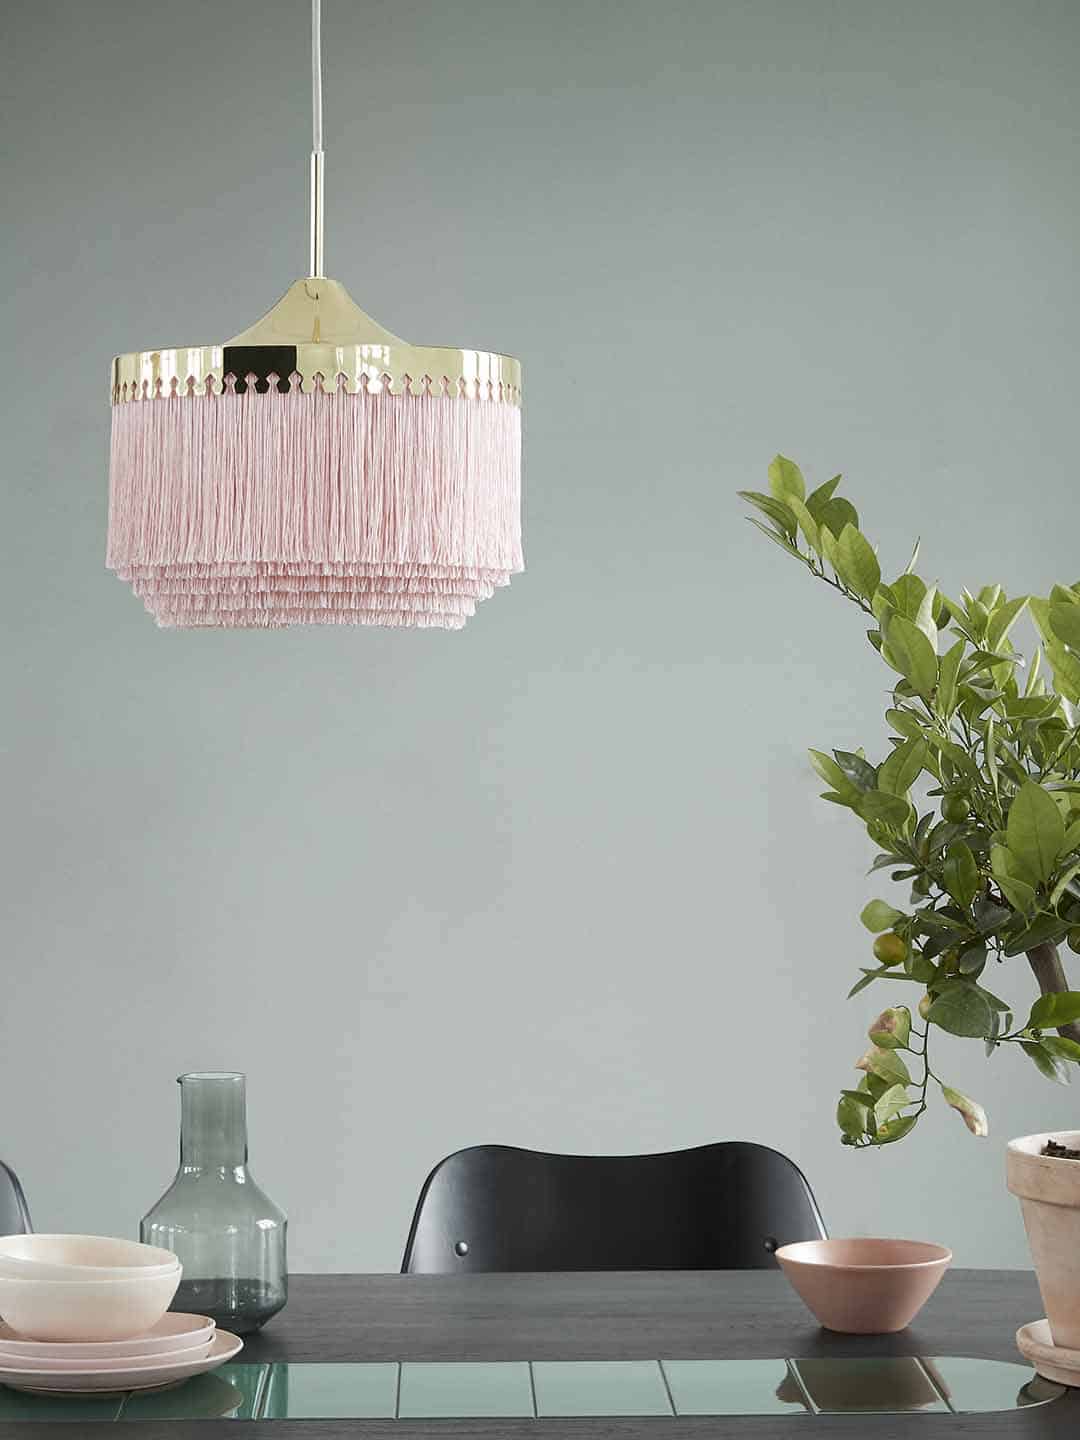 Светильник подвесной Warm Nordic Fringe диаметром 30 см в бледно-розовом цвете в светлом интерьере